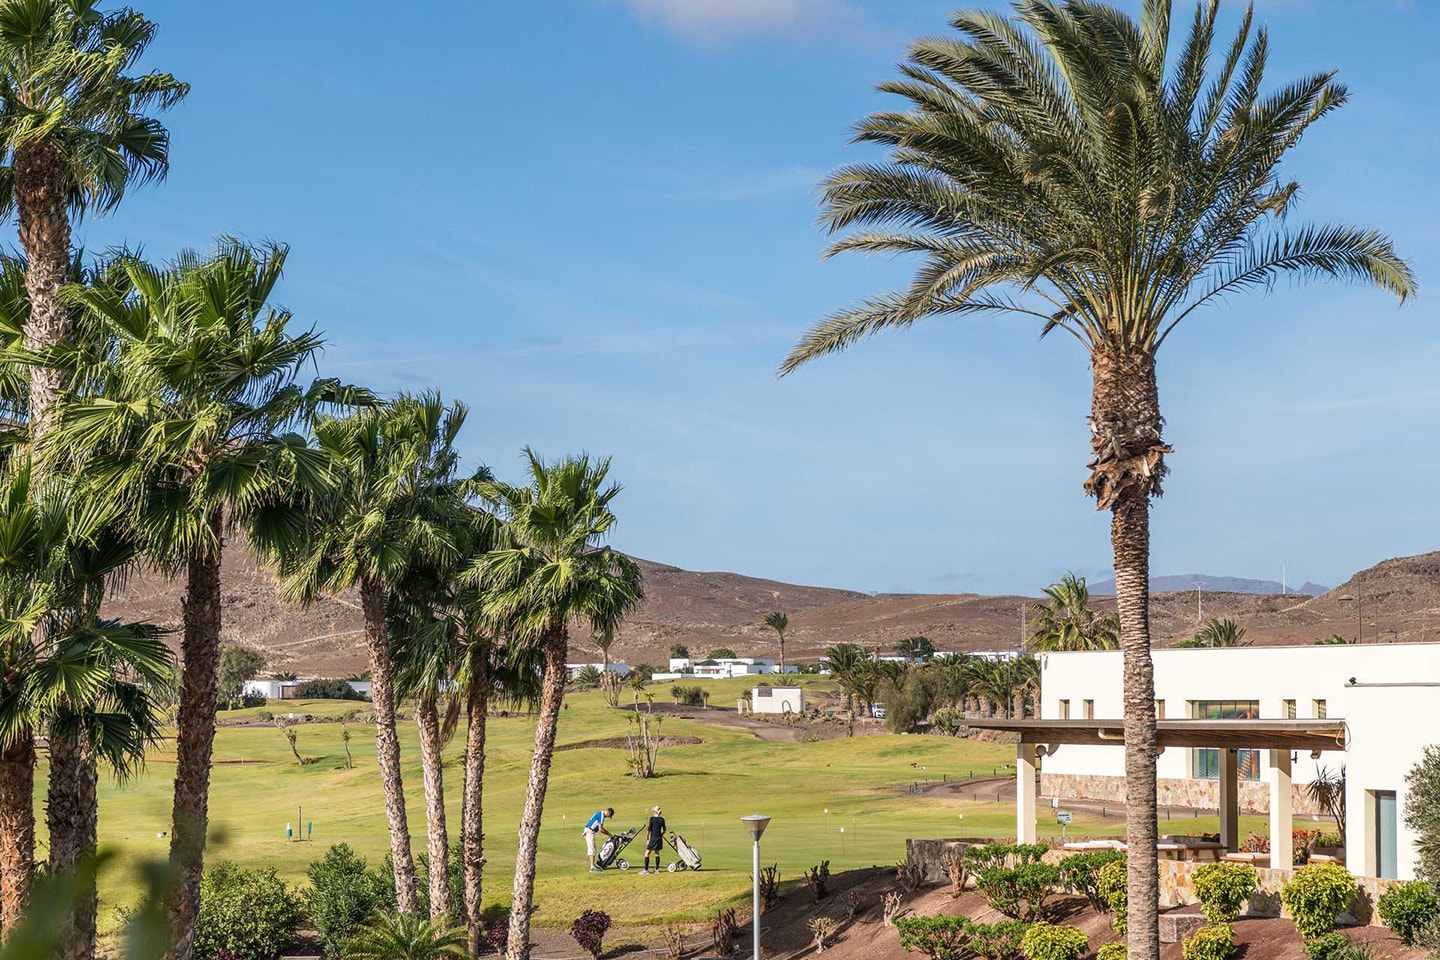 Resa till Playitas Resort på Kanarieöarna med Apollo (35 av 42)